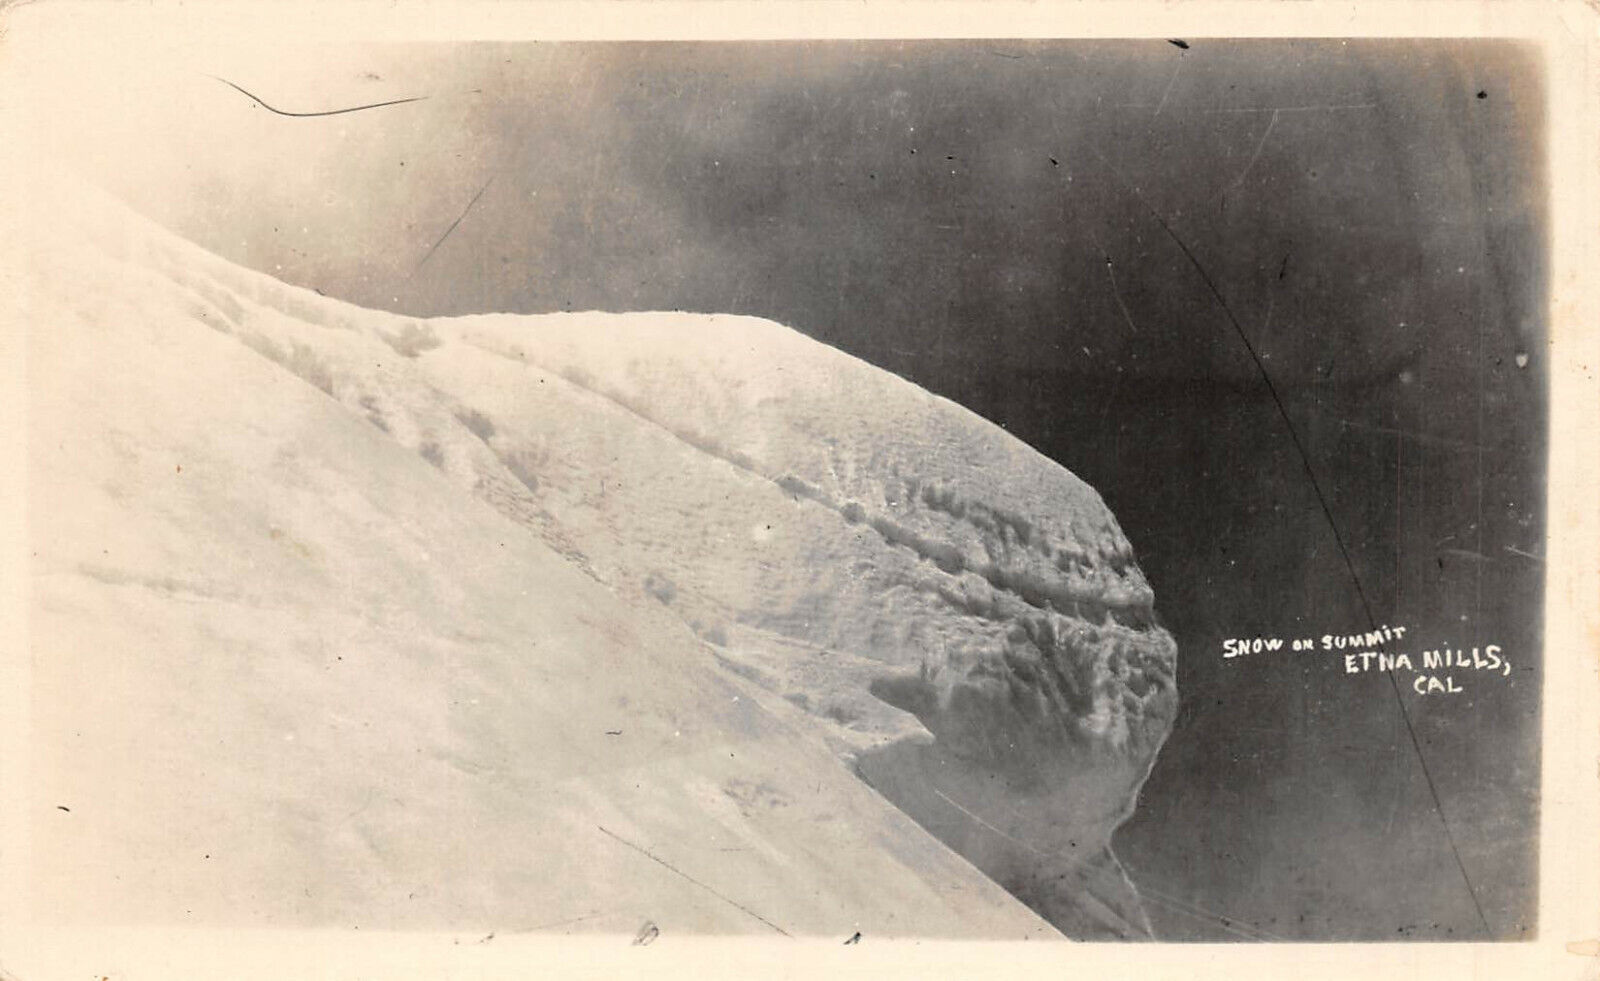 RPPC 1940's ETNA MILLS, CALIFORNIA SNOW ON SUMMIT